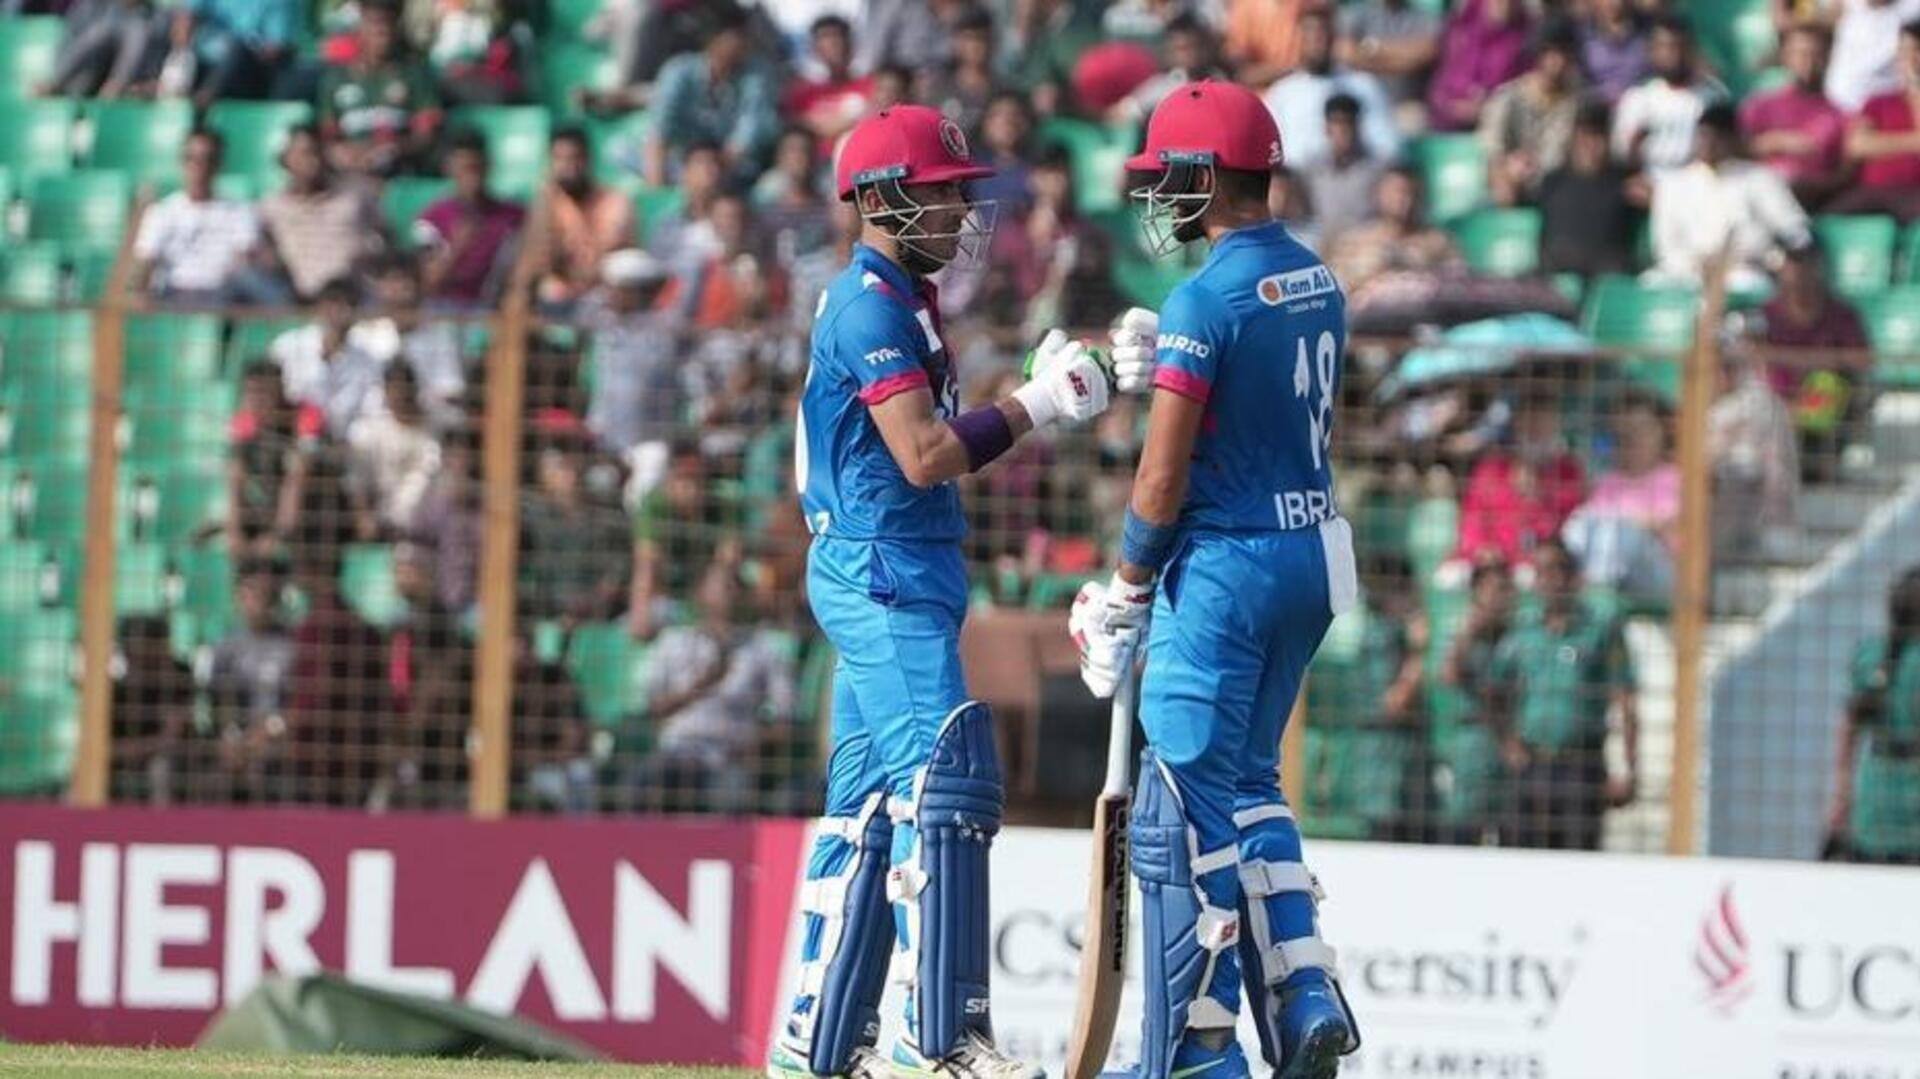 बांग्लादेश बनाम अफगानिस्तान: रहमानुल्लाह गुरबाज और इब्राहिम जादरान के बीच हुई रिकॉर्ड 256 रनों की साझेदारी